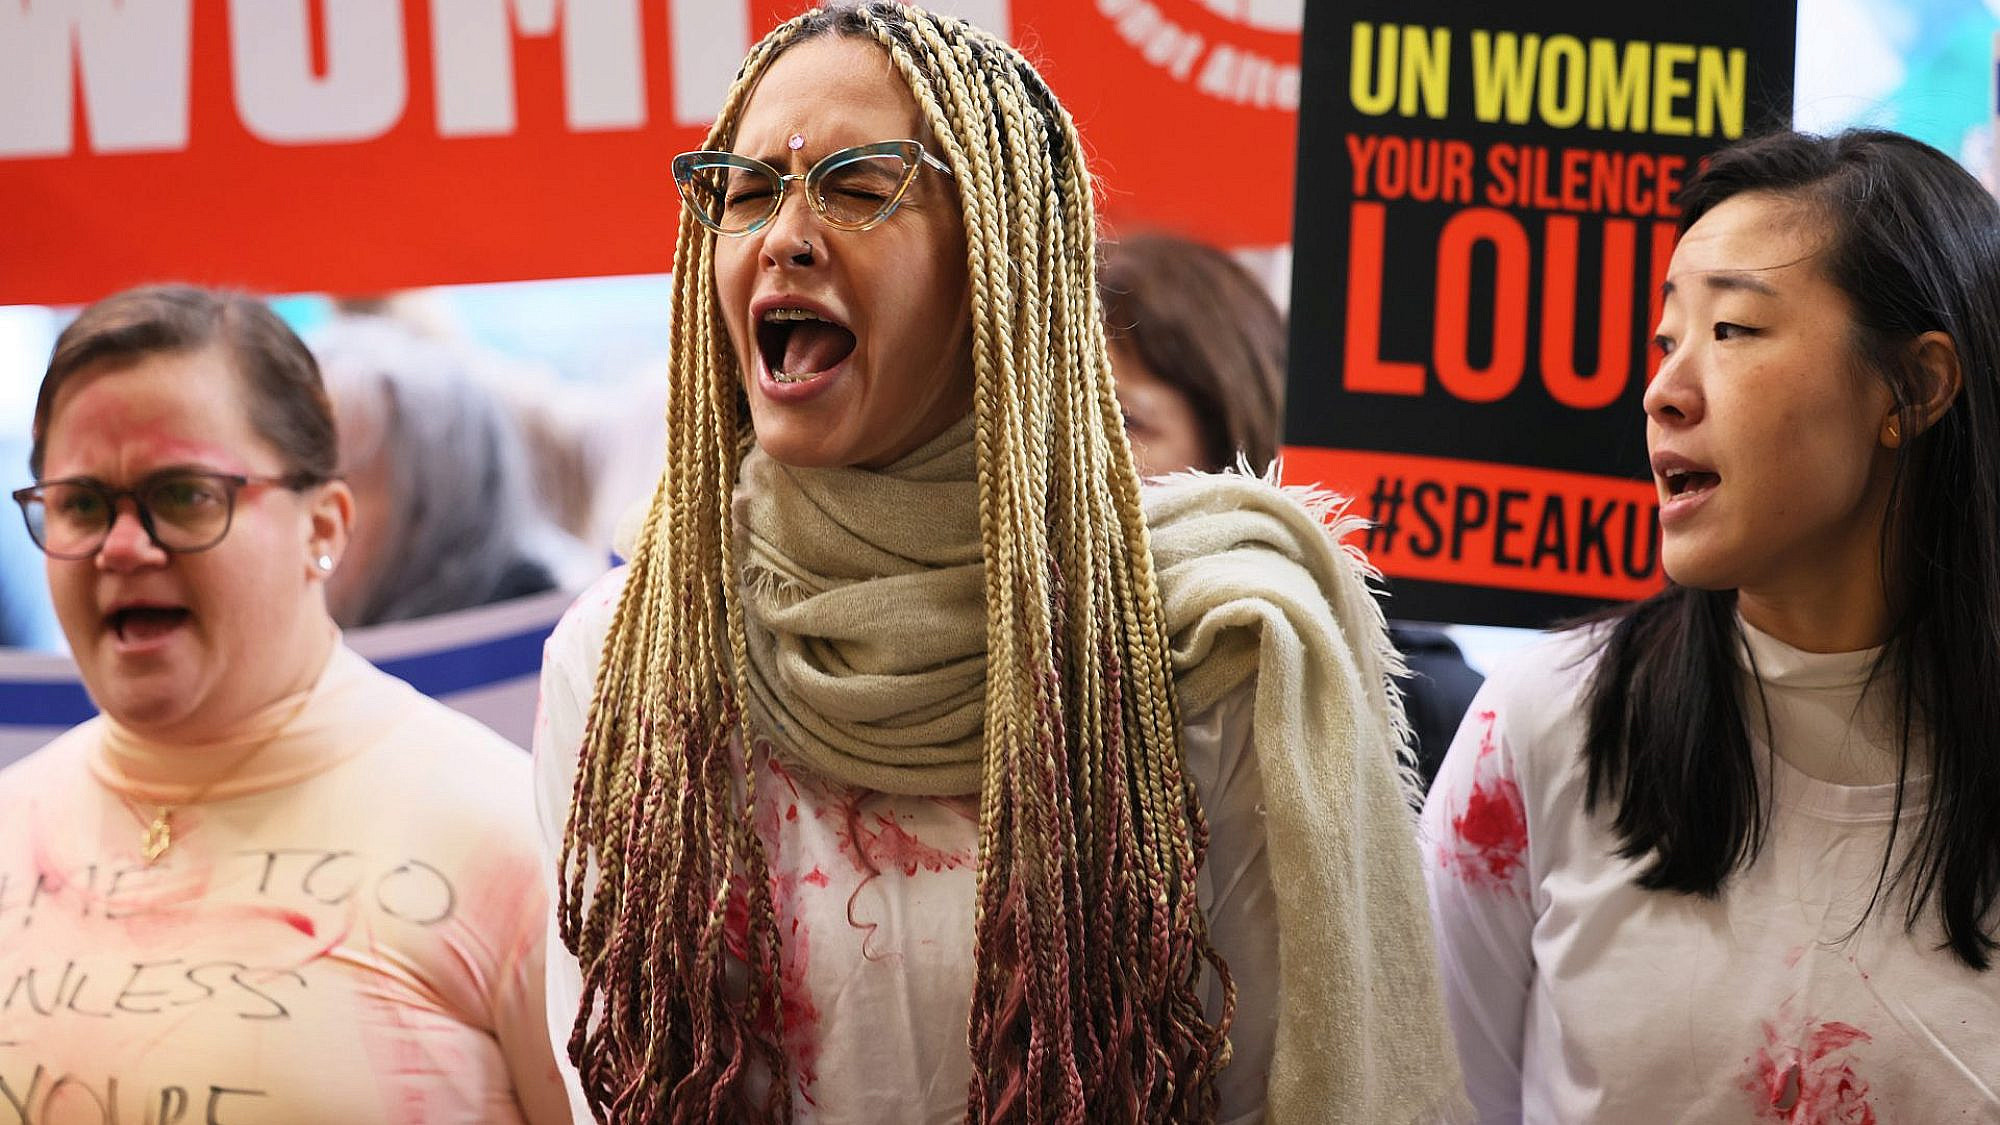 הפגנה נגד שתיקת ארגון הנשים של האו"ם בניו יורק, 27.11.23 | צילום: Michael M. Santiago/Getty Images